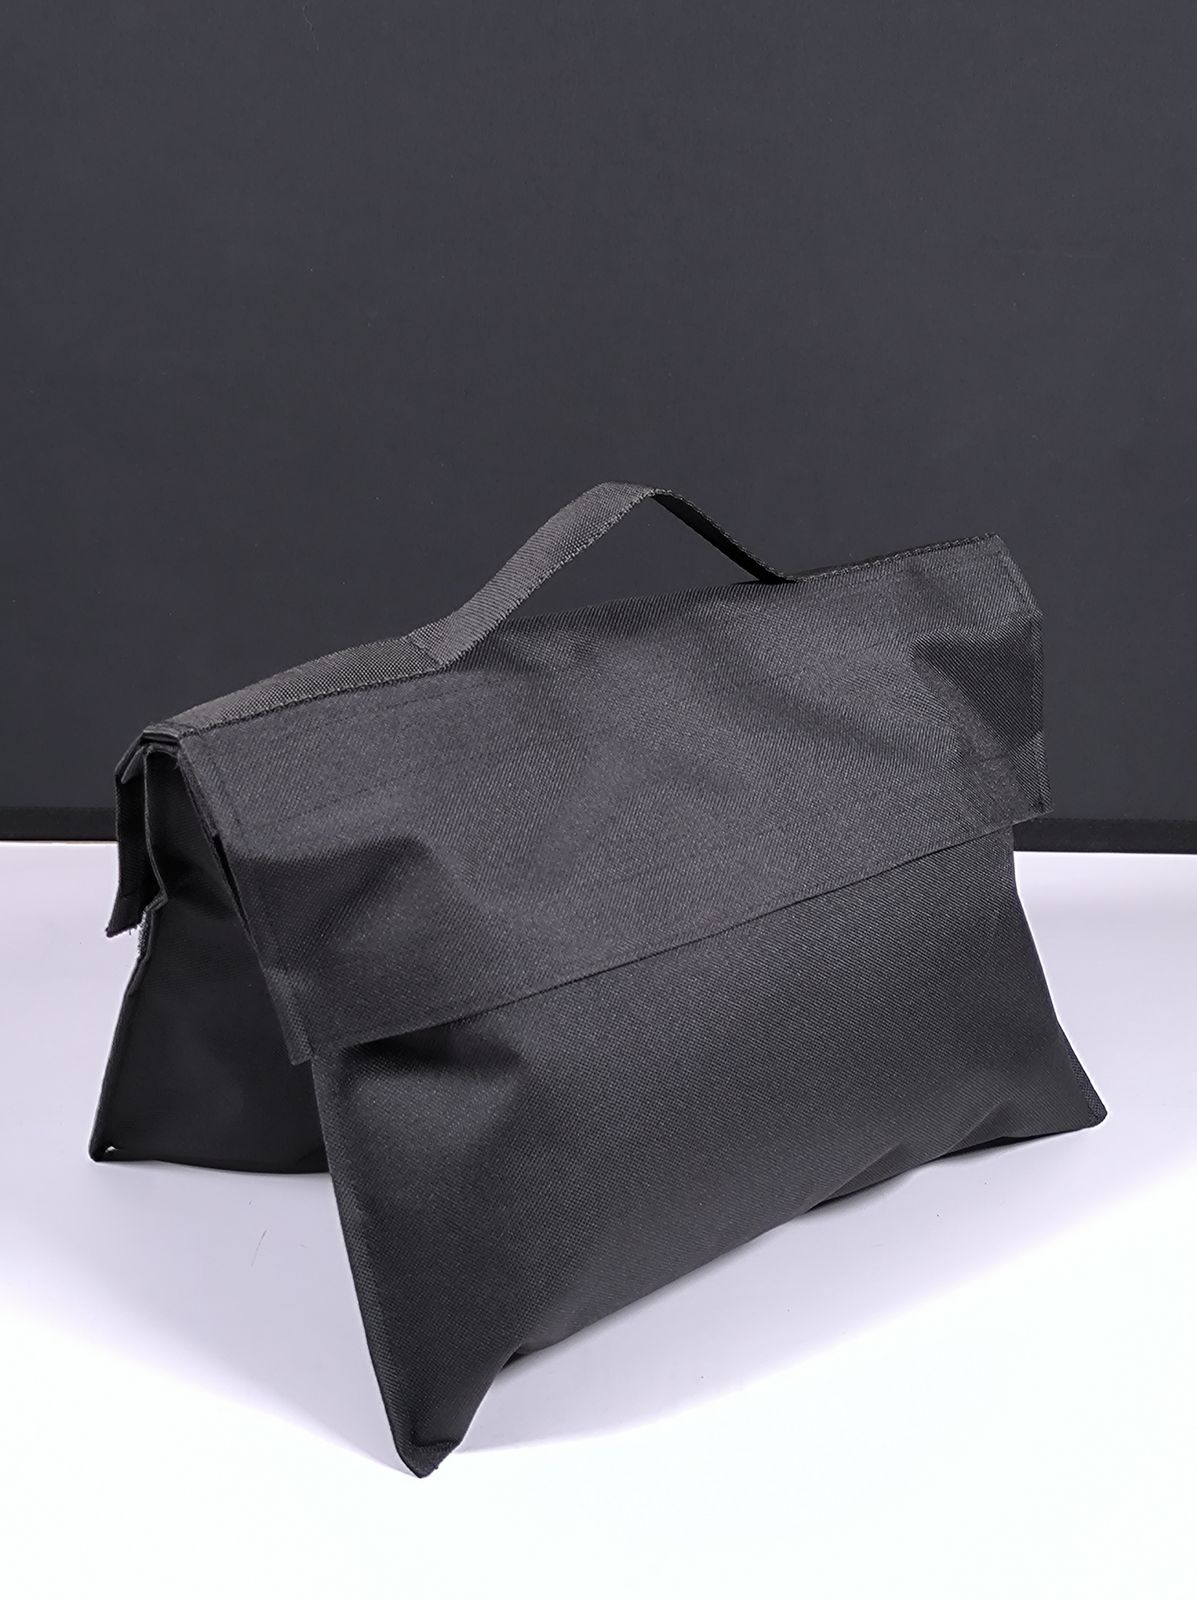 Мешок для песка Apode Sand Bag (до 11 кг) пуст.